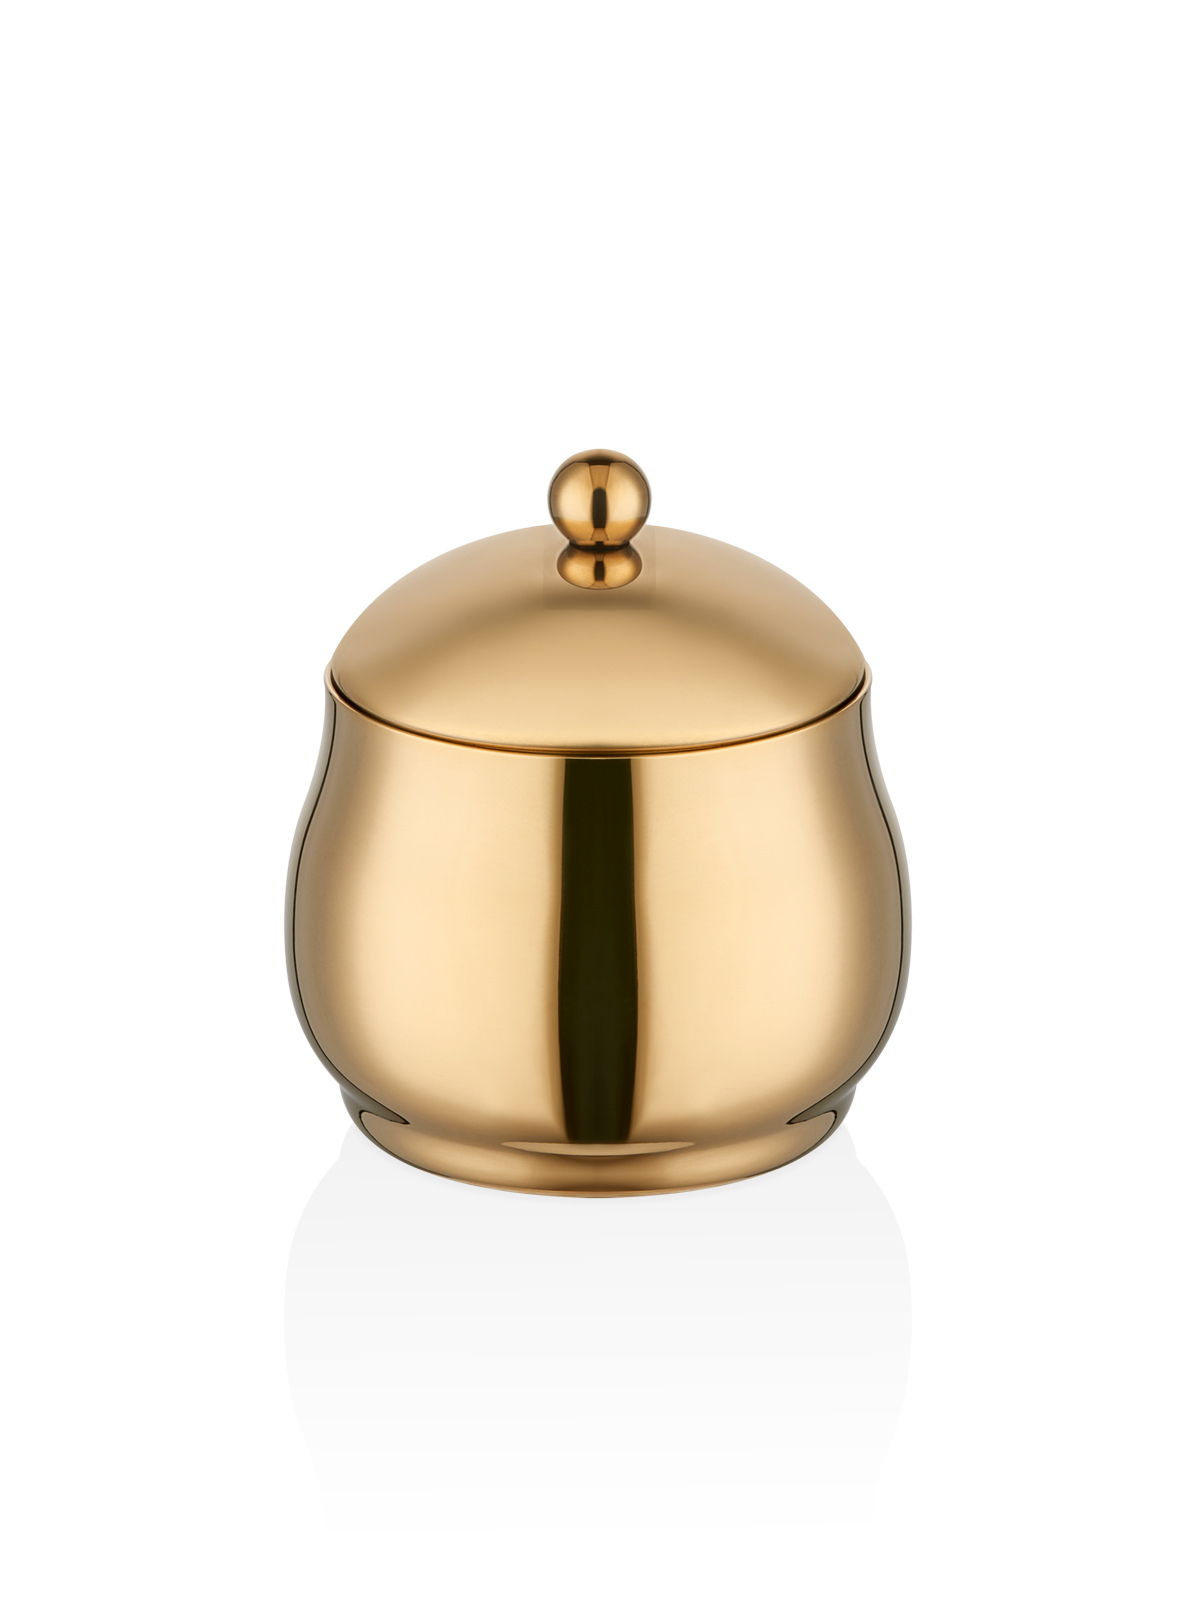 Sphere Spice Bowl - Gold Titanium